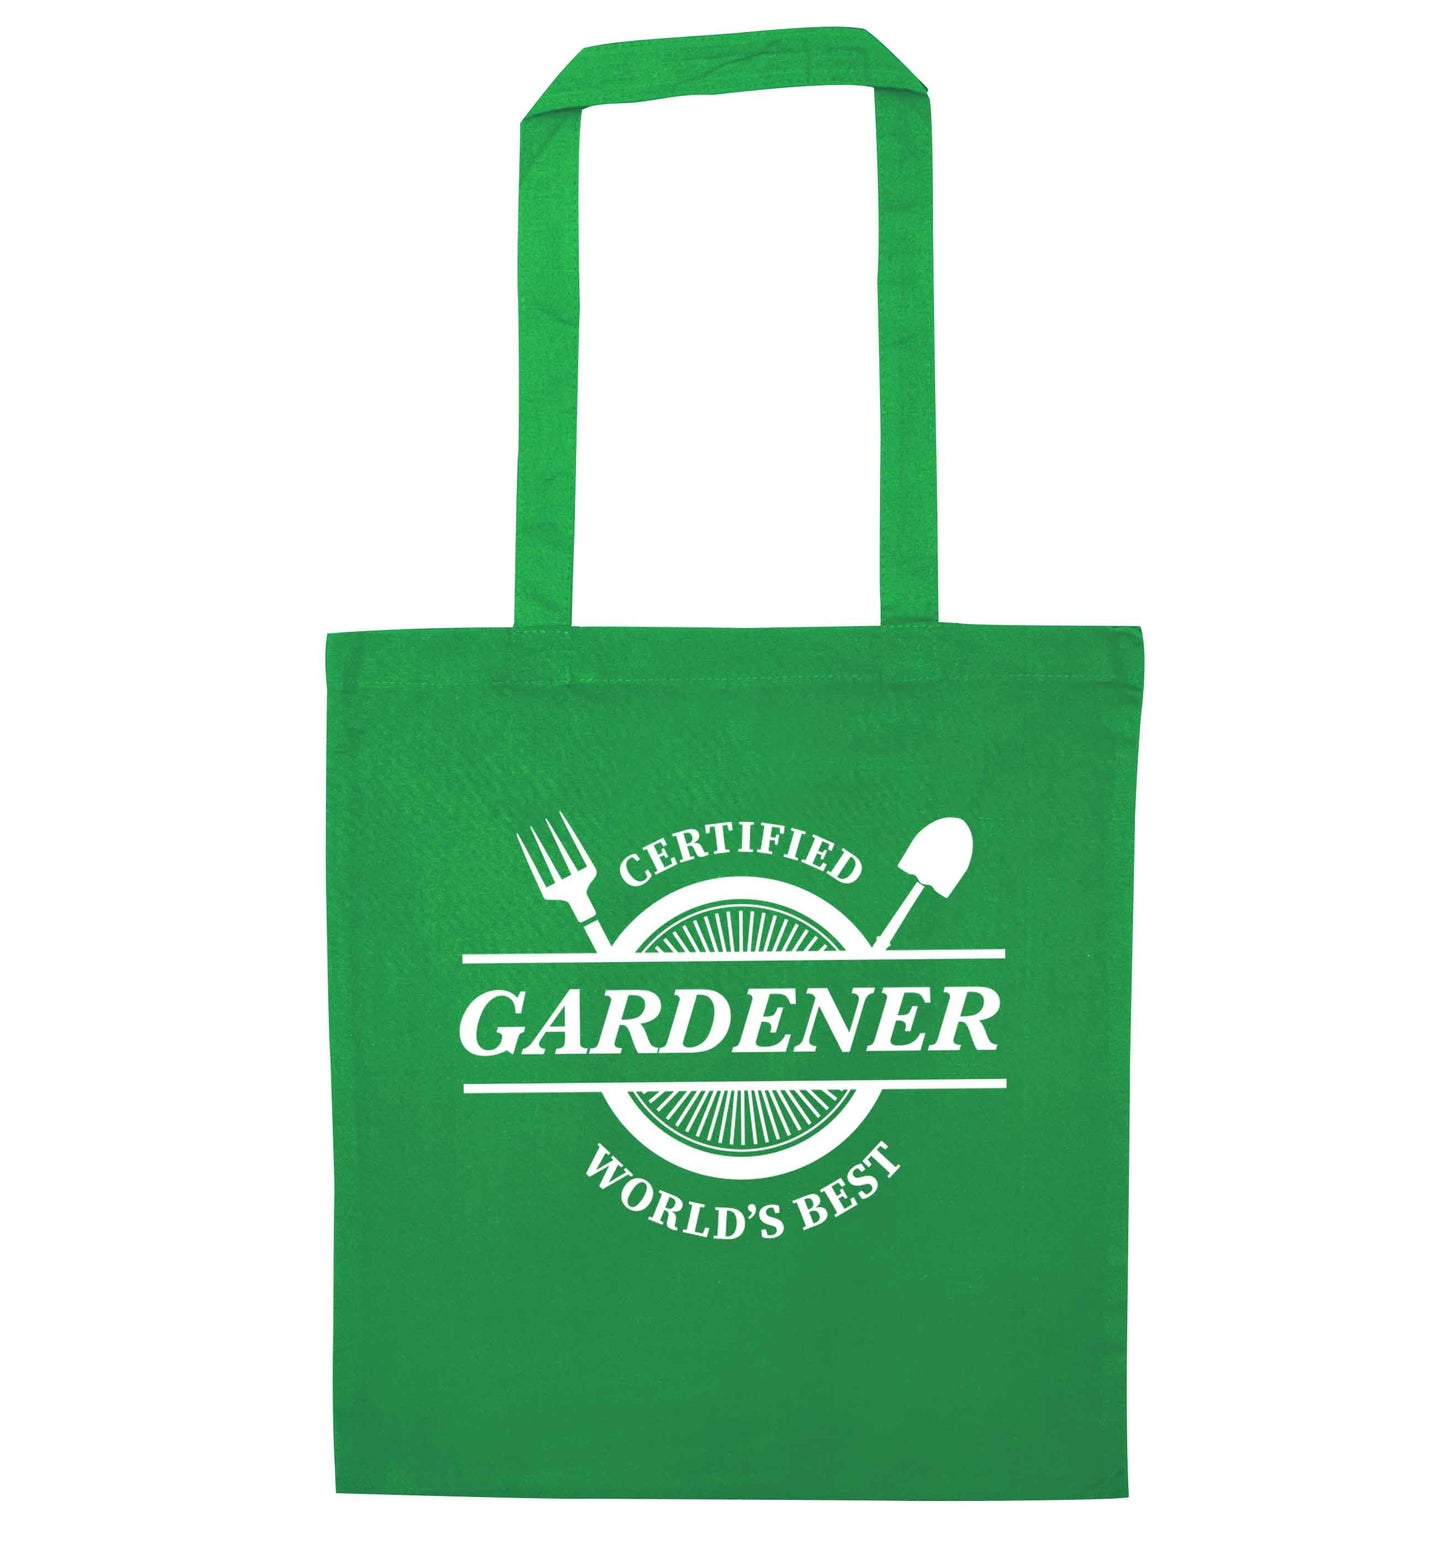 Certified gardener worlds best green tote bag